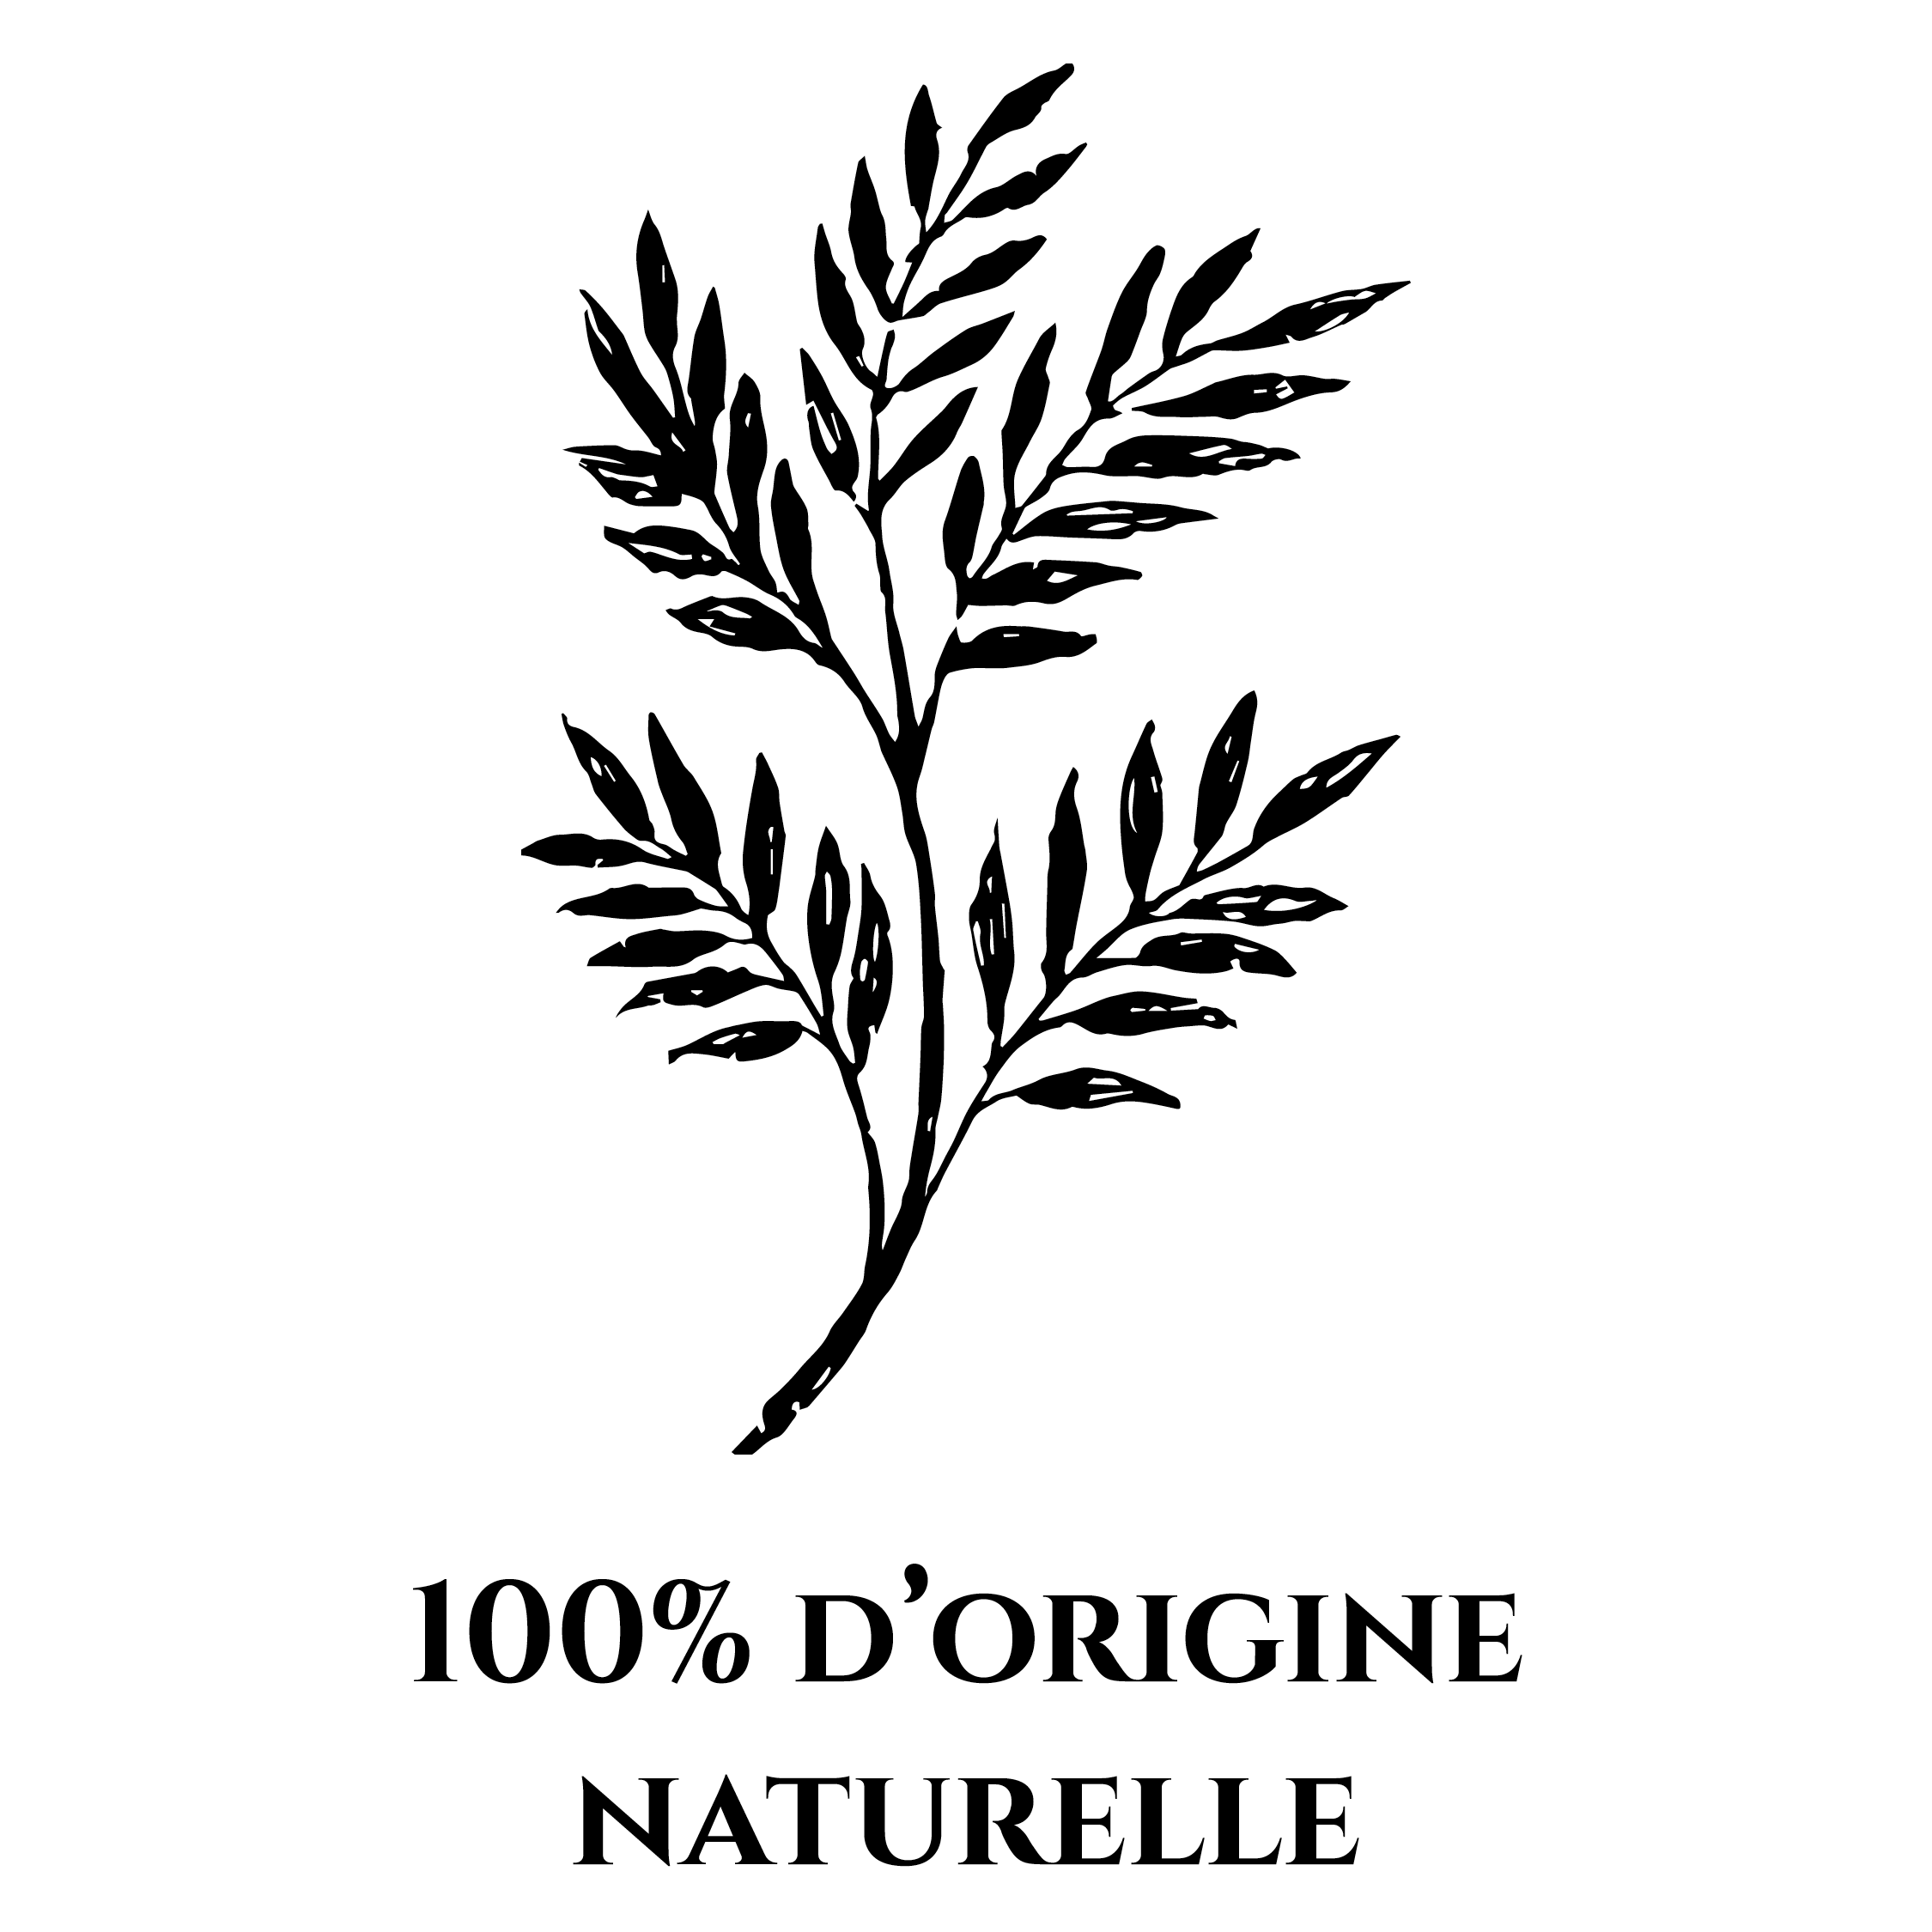 Icône représentant une plante pour symboliser le fait que les produits de la marque OPHÉO soient 100% d'origine naturelle.